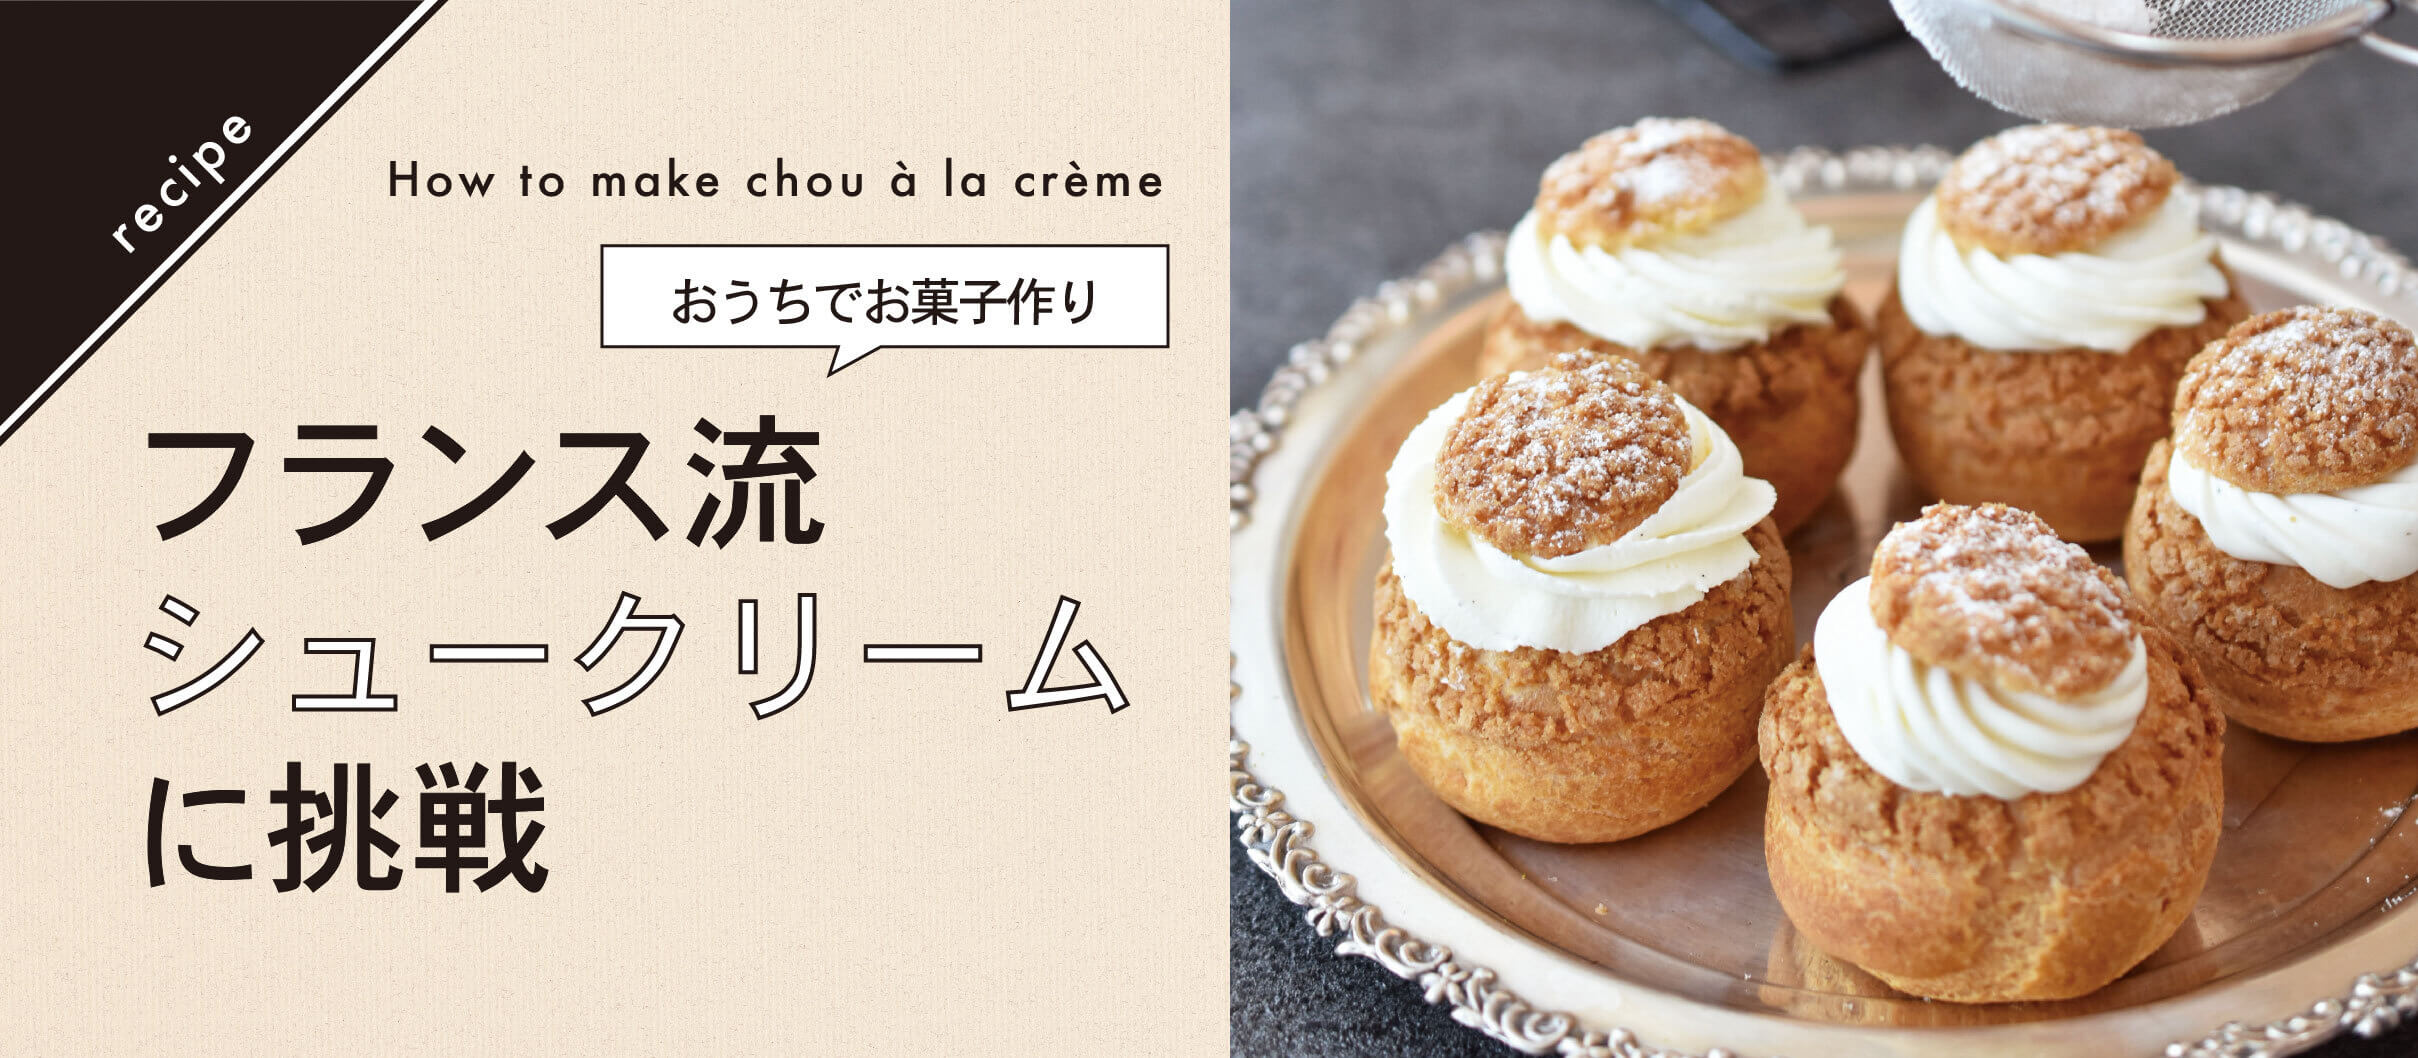 おうちでお菓子作り - フランス流シュークリームに挑戦